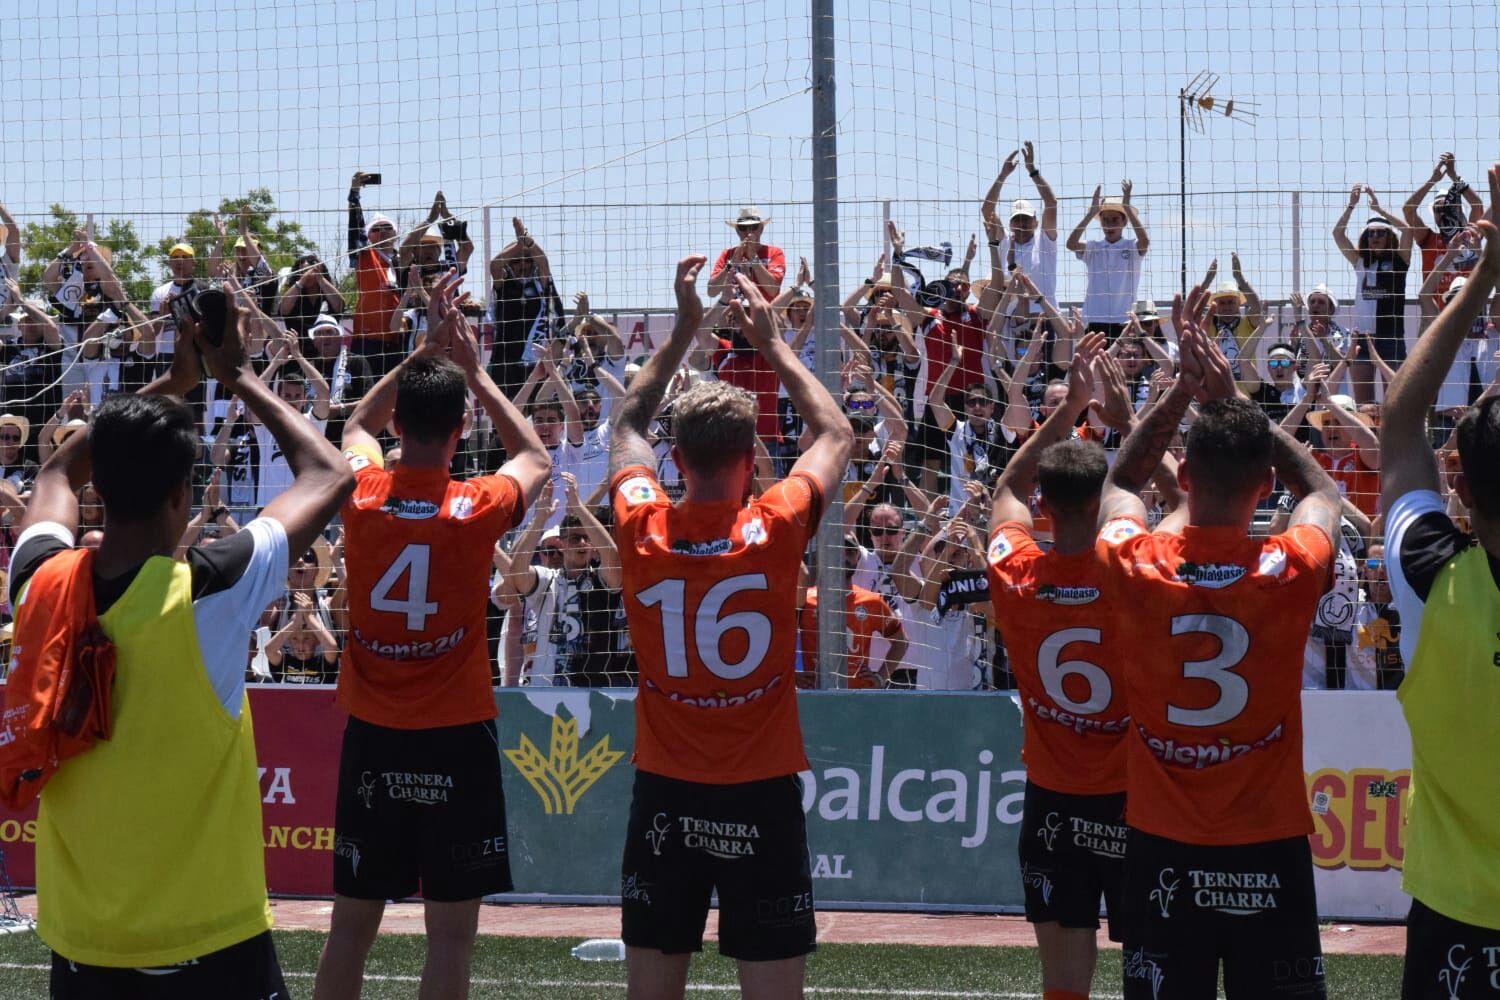 Unionistas Salamanca cayó por la mínima en su visita al Yugo Socuéllamos (1-0) que se pone en ventaja en la eliminatoria definitiva por el ascenso a Segunda División B